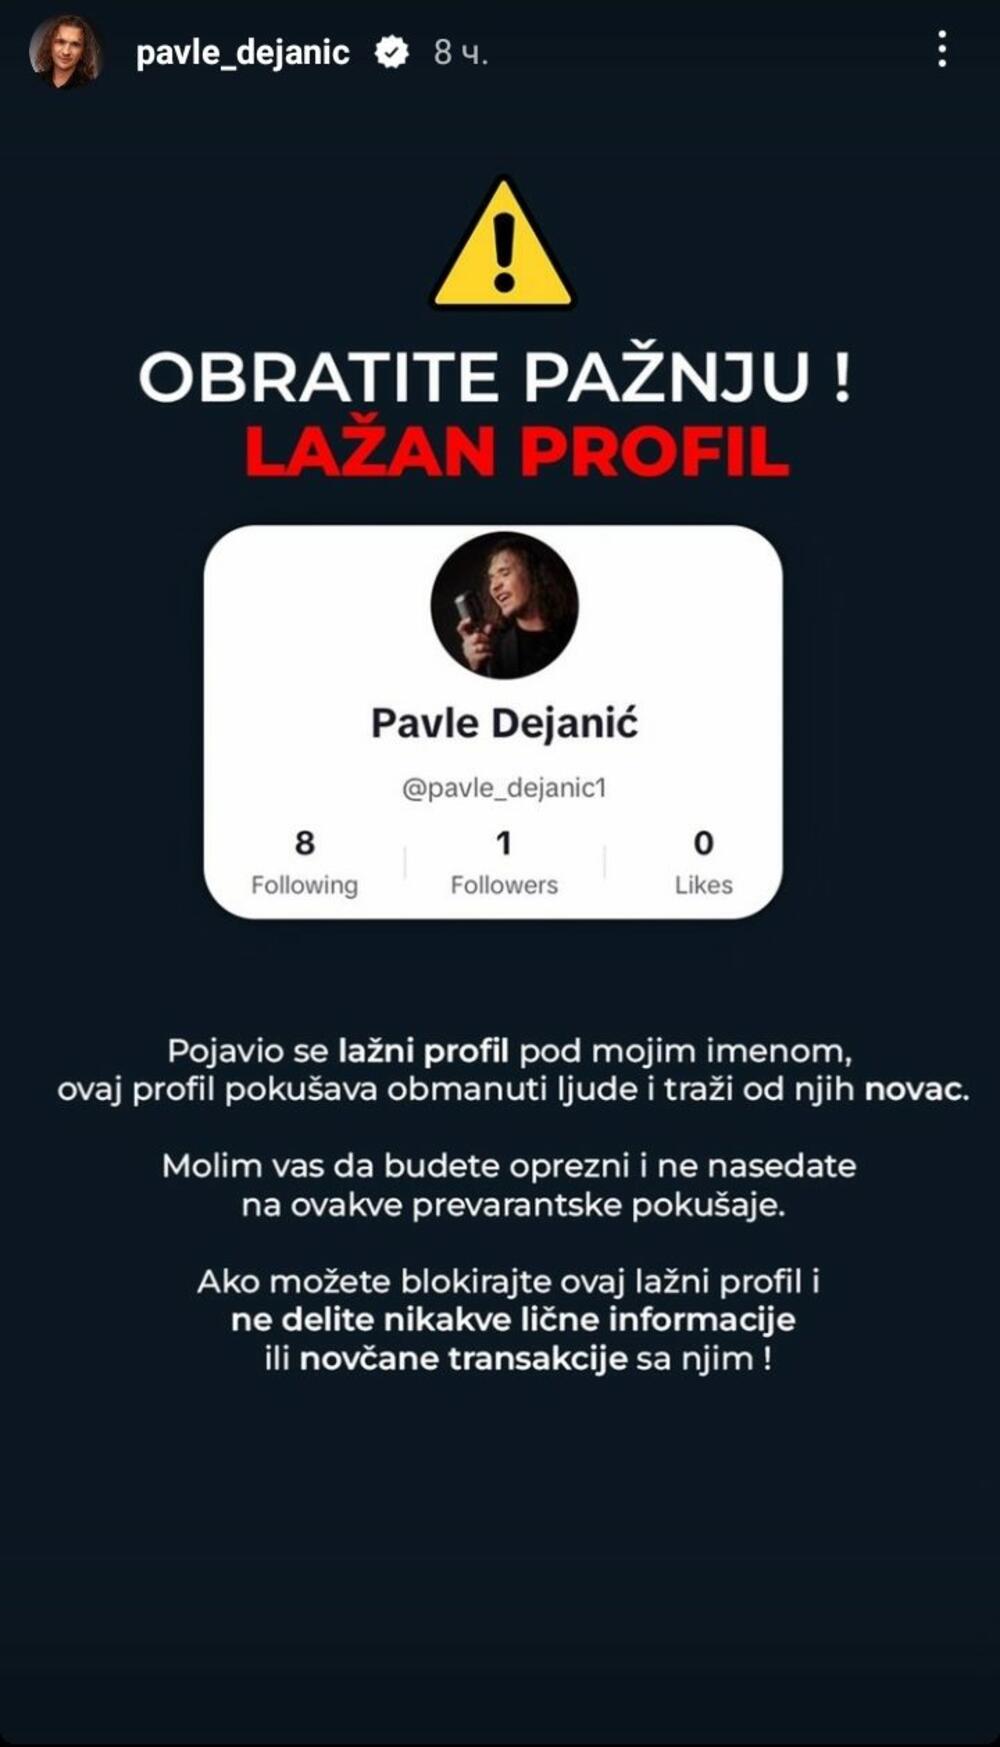 Popularni pevač Pavle Dejanić upozorio je svoje pratioce na 'Instagramu' da obrate pažnju na jedan profil koji se lažno predstavlja i koristi njegovo ime da bi stekao neku finansnijsku korist od ove zloupotrebe